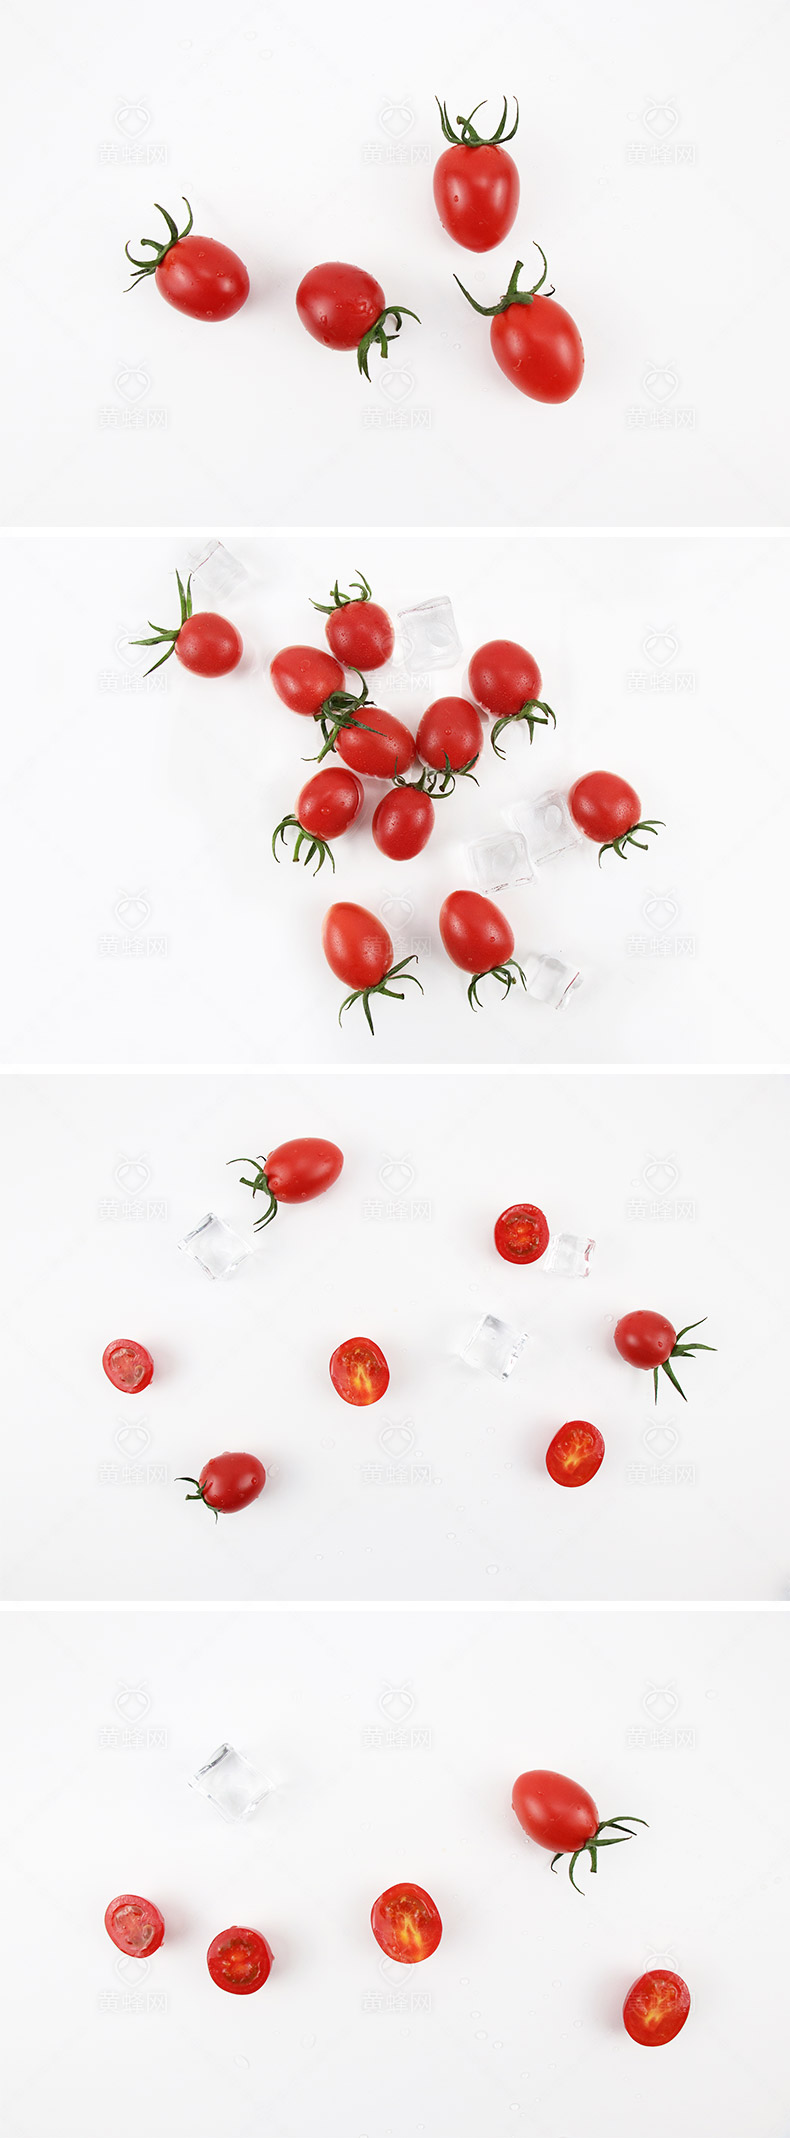 小番茄,圣女果,红番茄,水果,